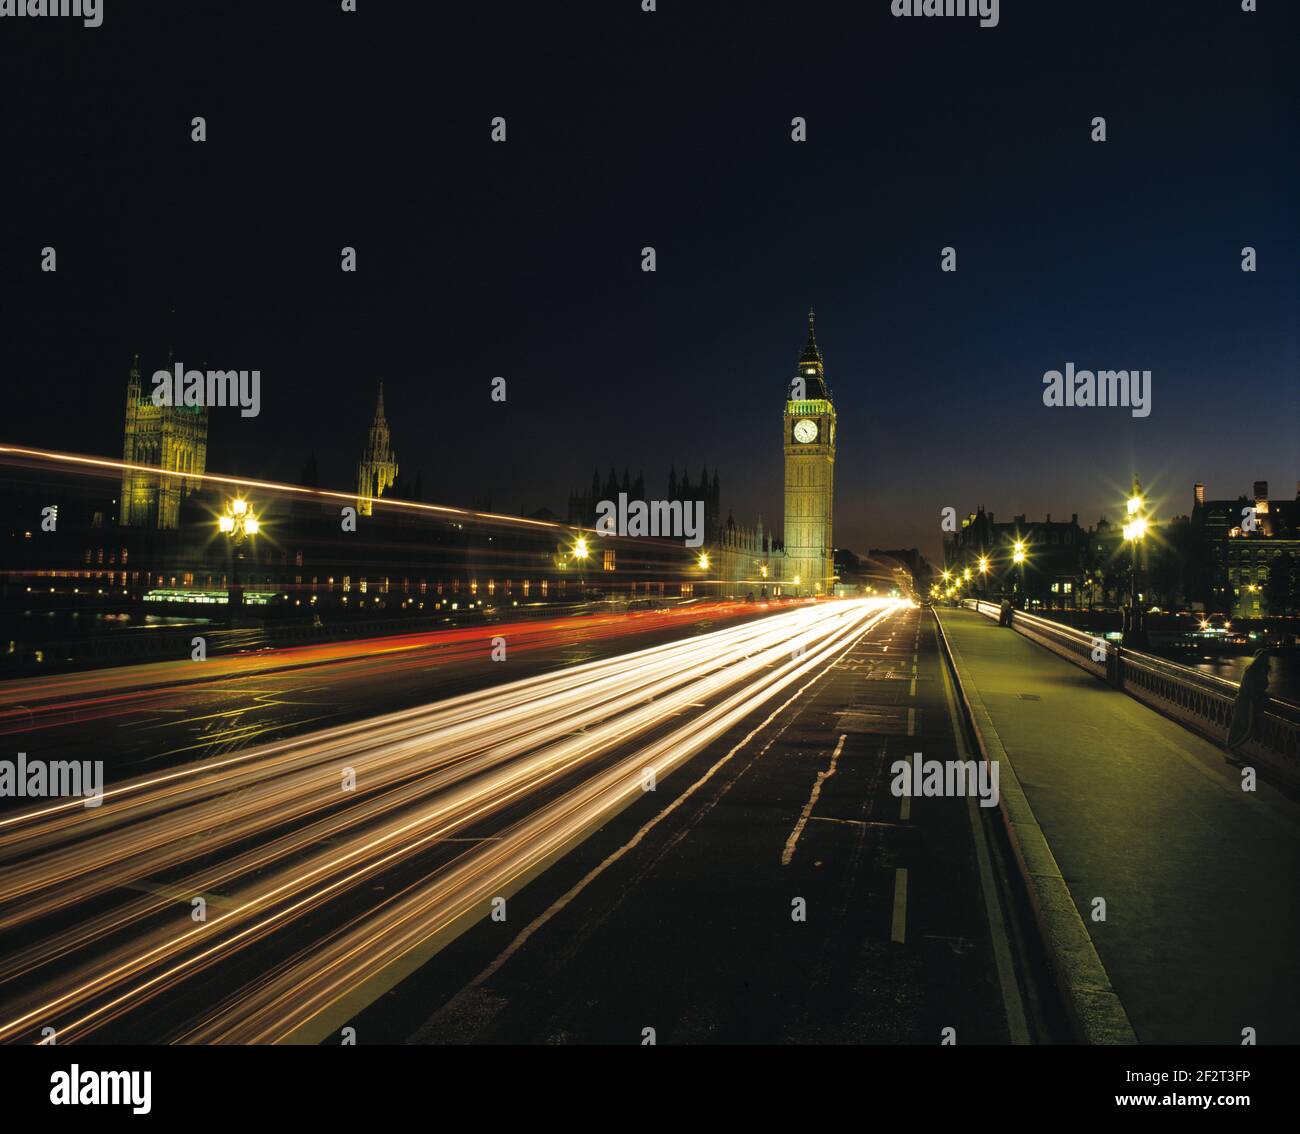 Vereinigtes Königreich. England. London. Westminster Bridge und Houses of Parliament bei Nacht. Stockfoto